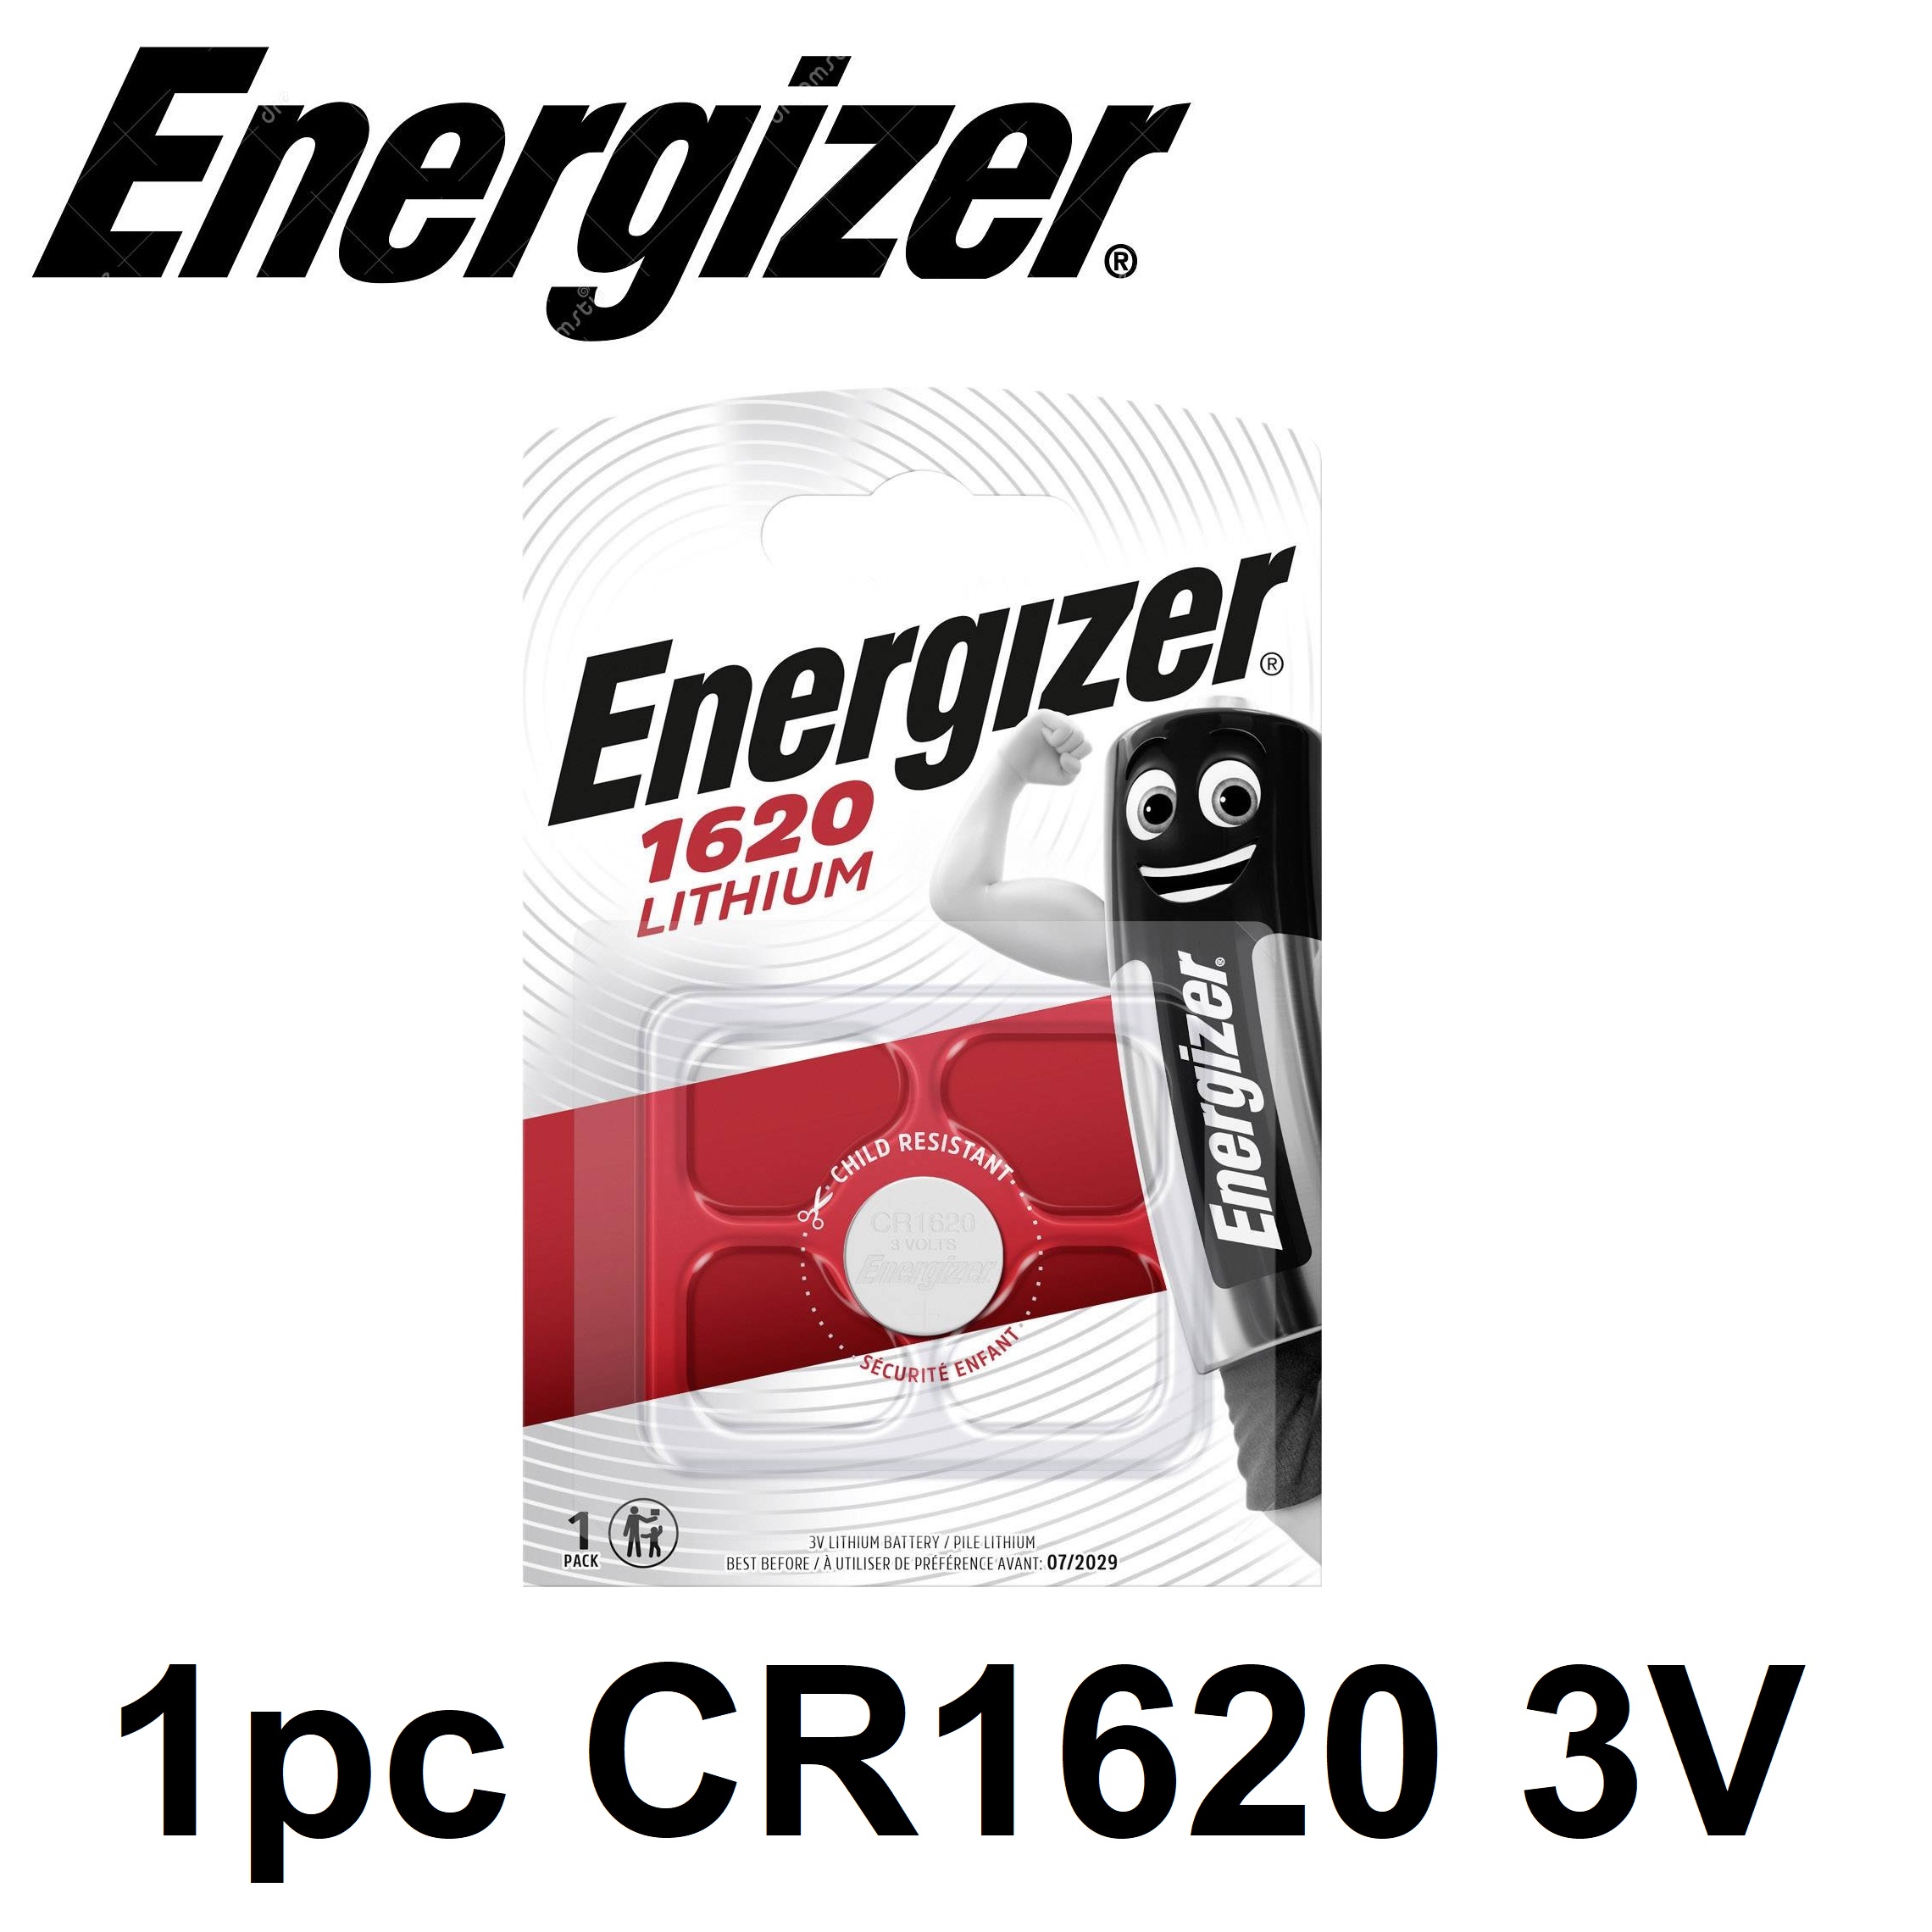 75pcs CR1620 CR 1620 DL1620 BR1620 3 Volt Button Cell Battery